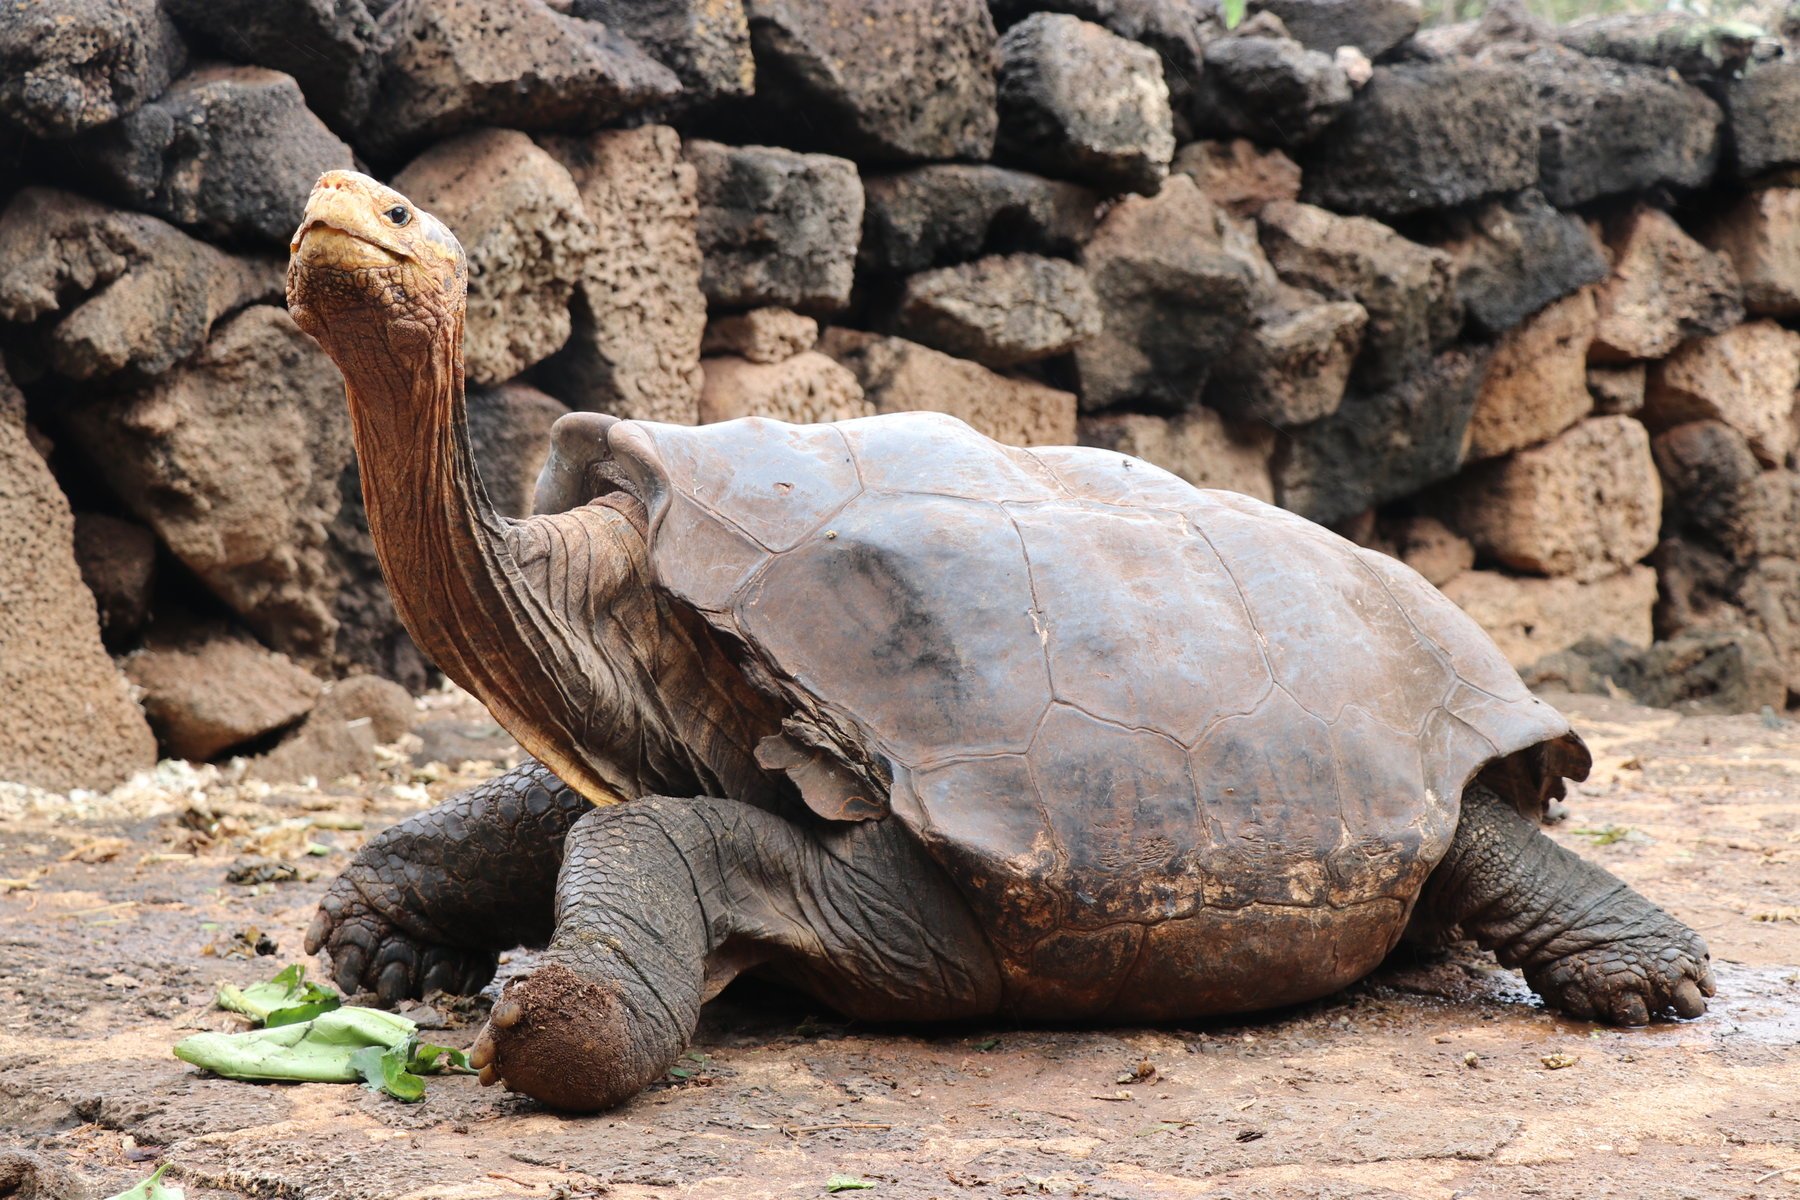  Diego, ţestoasa foarte activă sexual care şi-a salvat specia, s-a întors pe insula sa